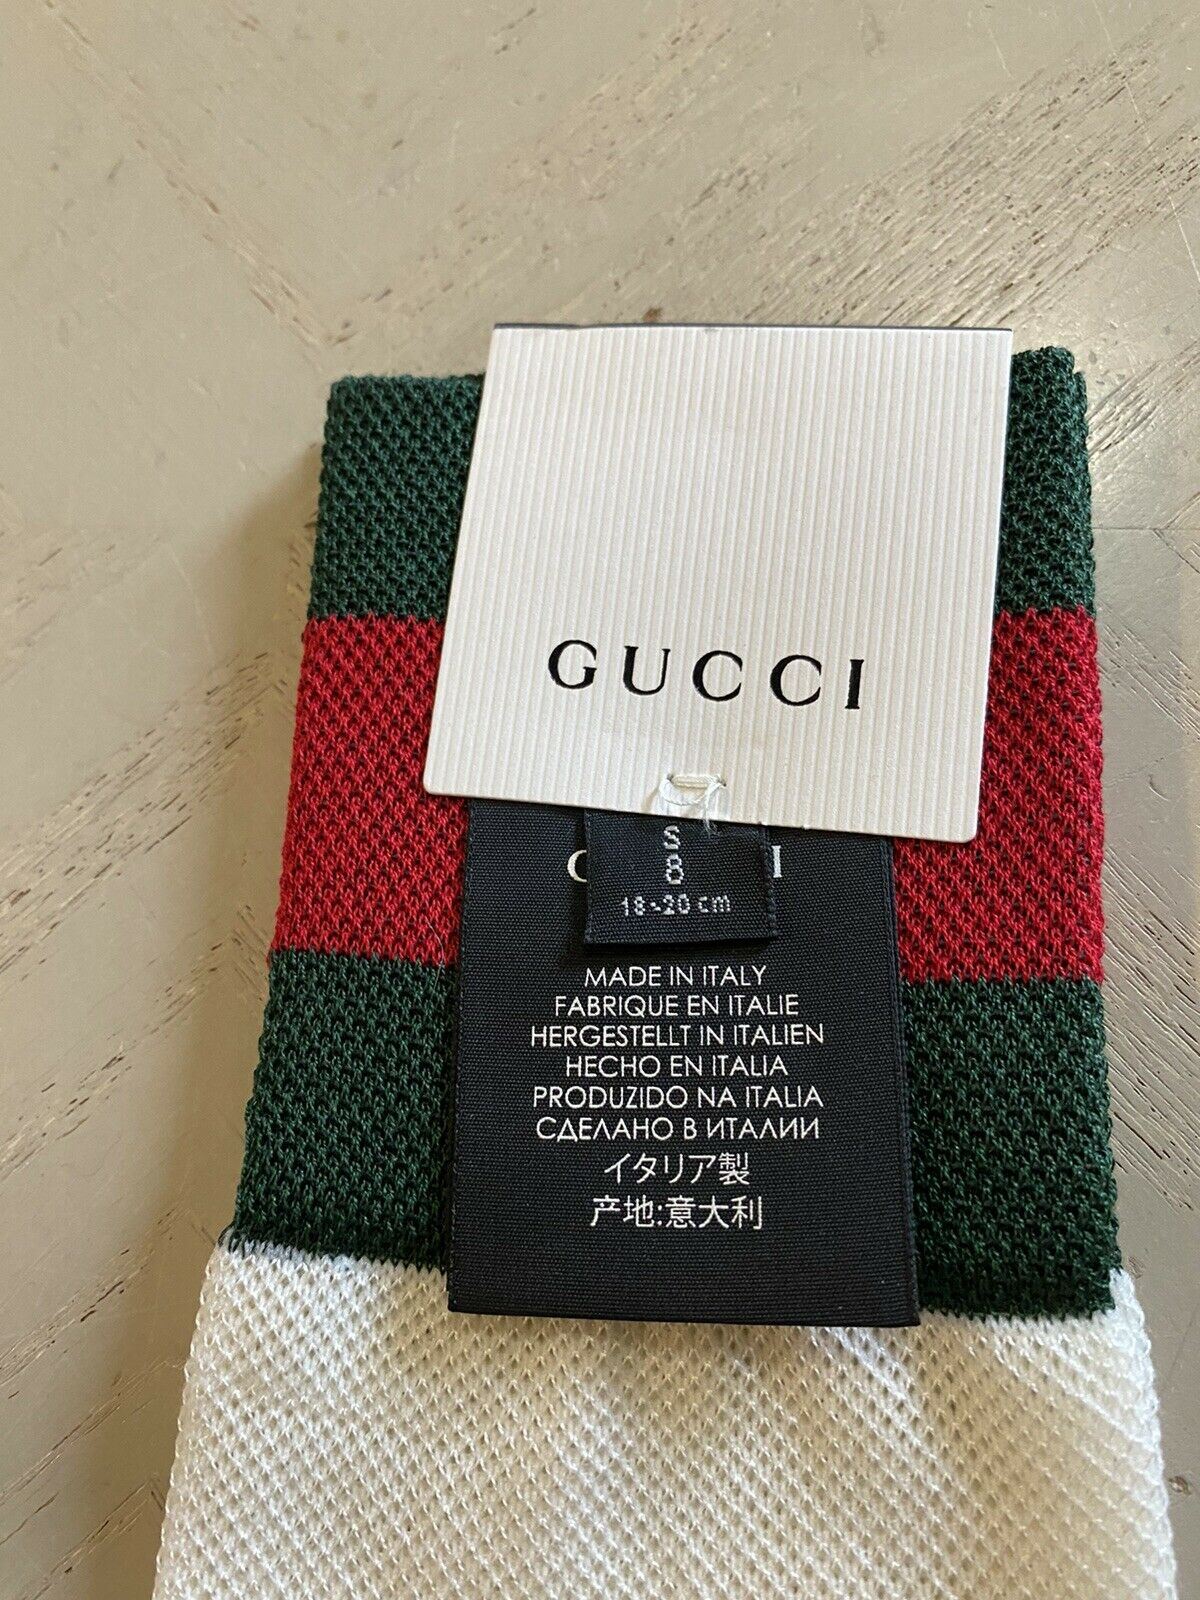 Хлопковые носки NWT Gucci с полосками красного/зеленого/слоновой кости, размер S, Италия